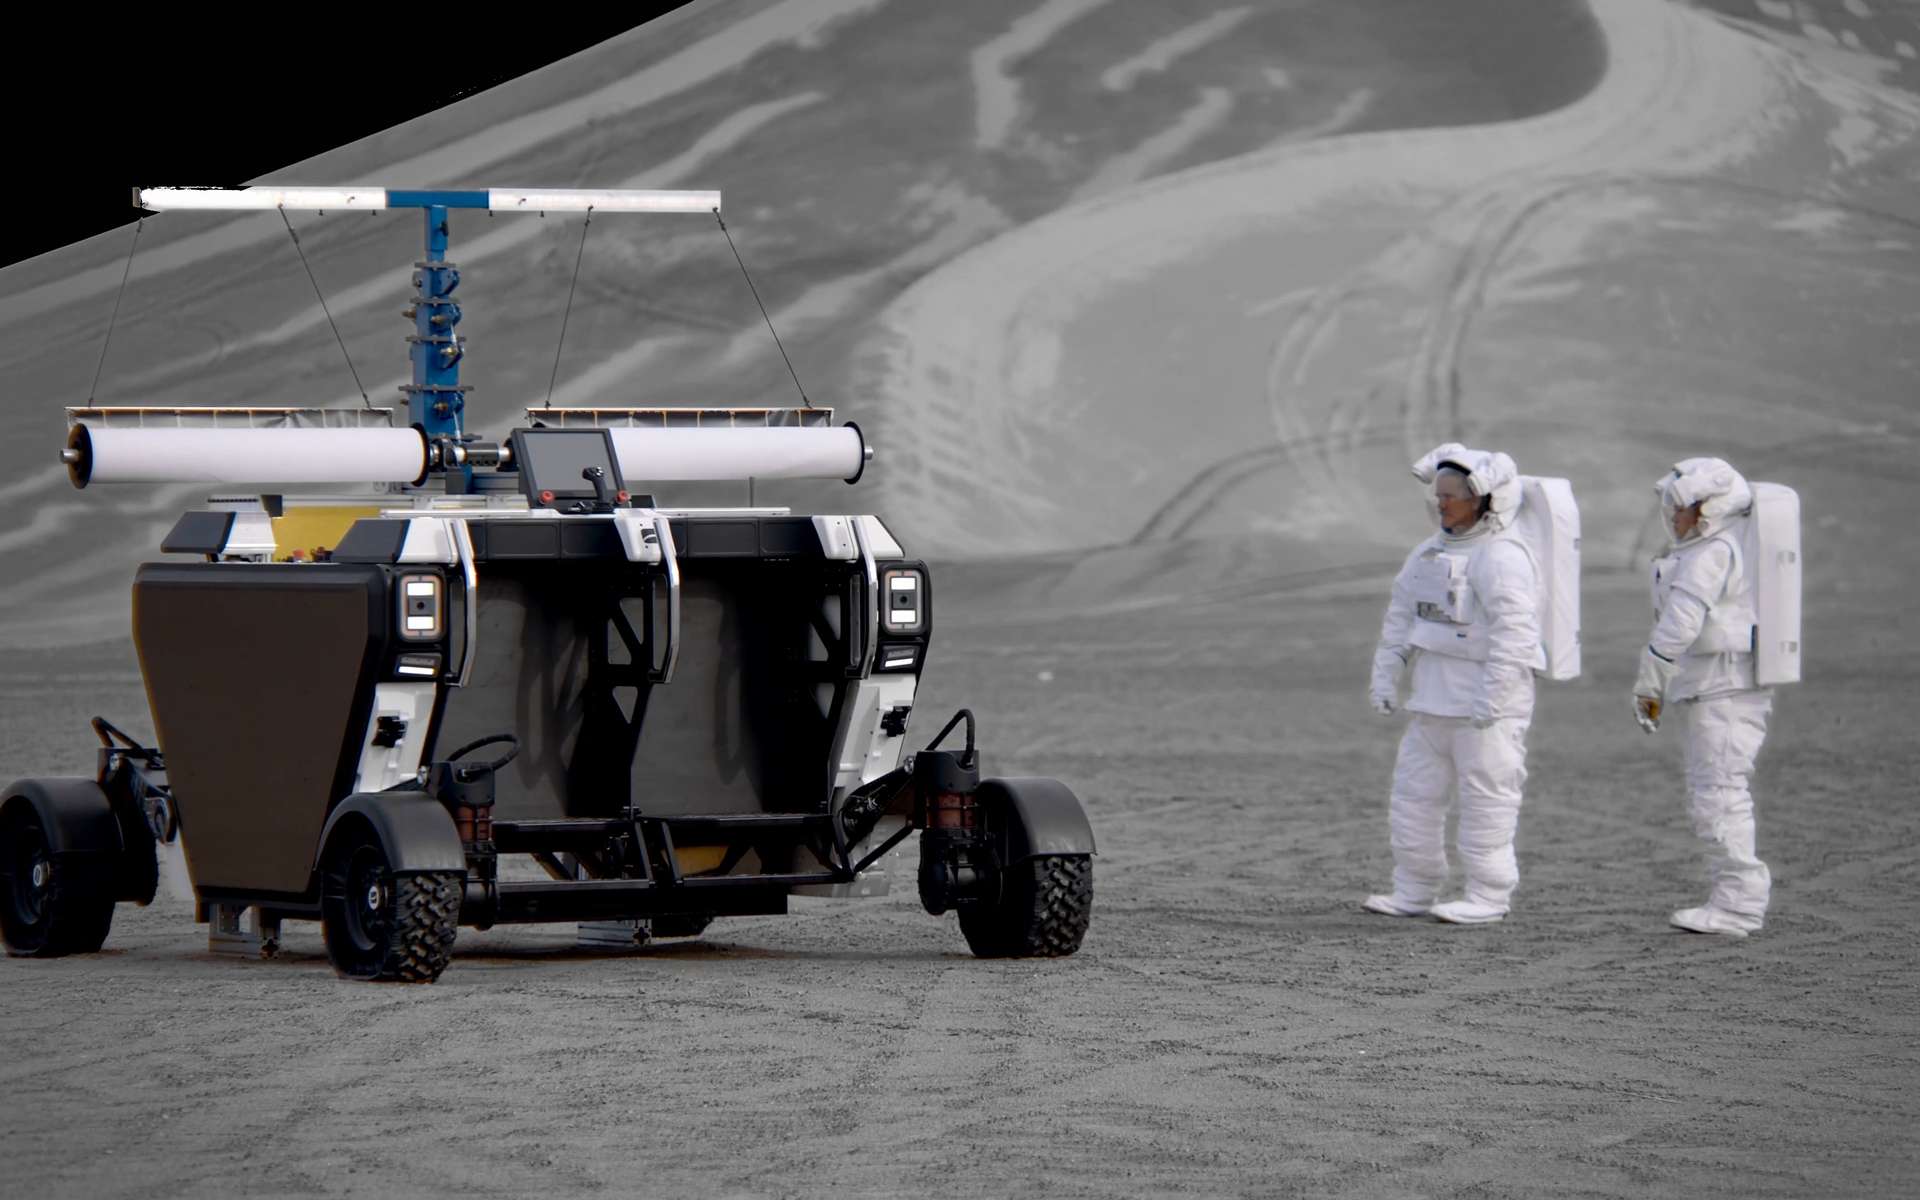 Voici Flex (Flexible Logistics and Exploration), le futur rover lunaire de la start-up Astrolab. Futur choisi par la Nasa ? © Astrolab